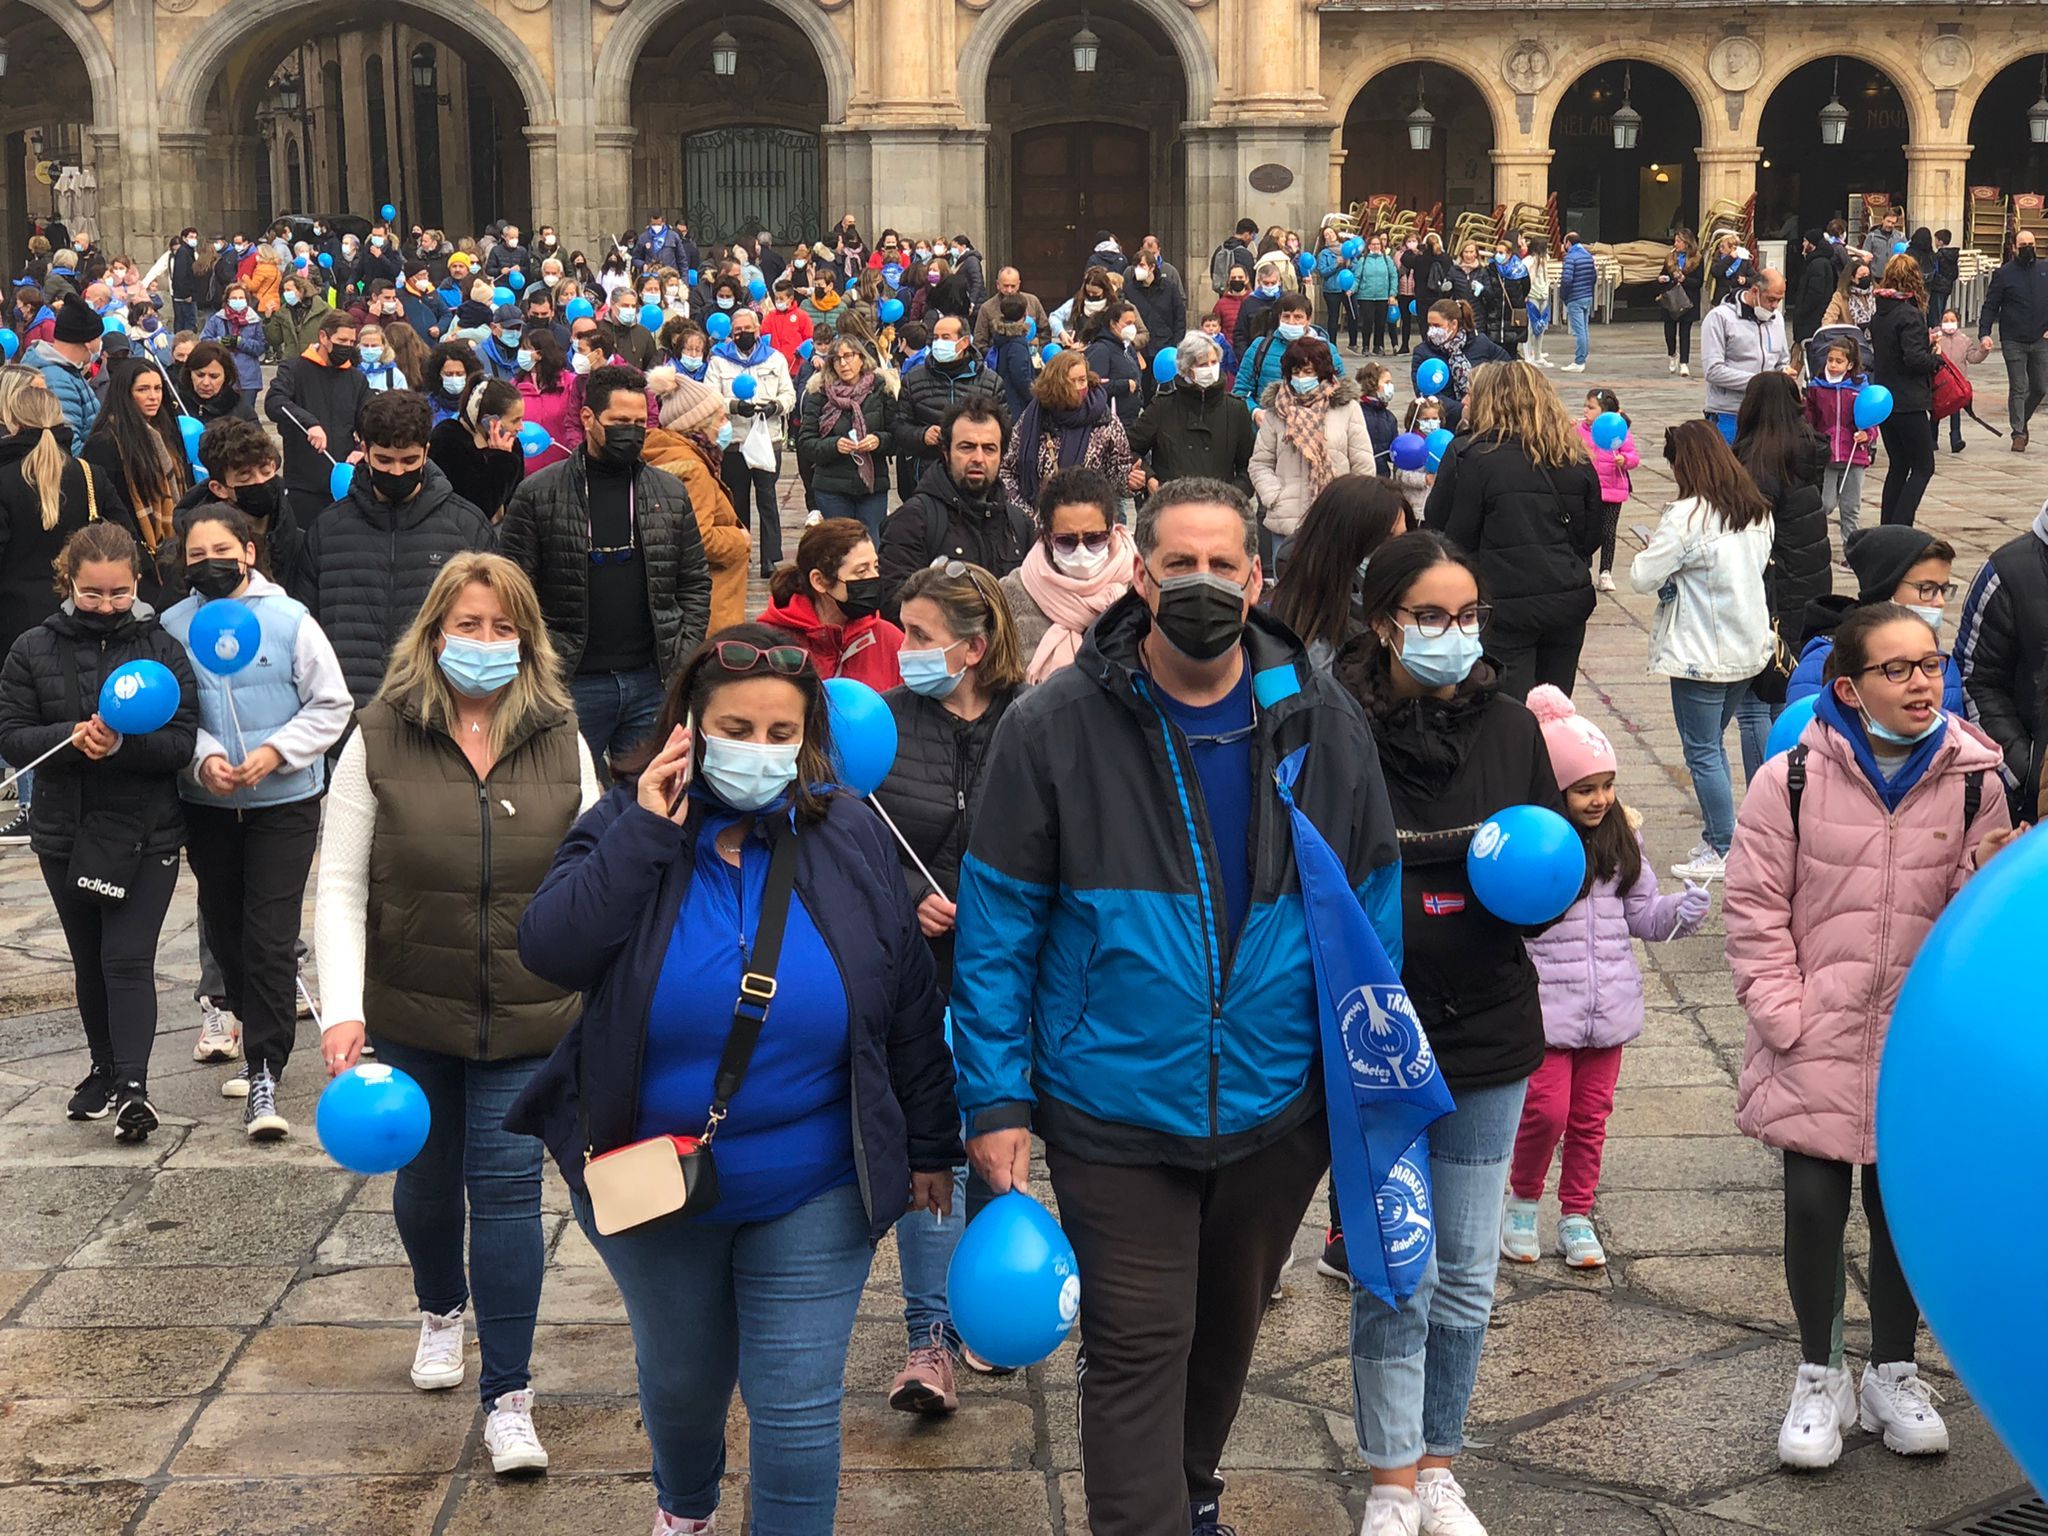 Marcha solidaria para dar visibilidad a la diabetes en Salamanca el 14 de noviembre de 2021. Foto SALAMANCA24HORAS (12)